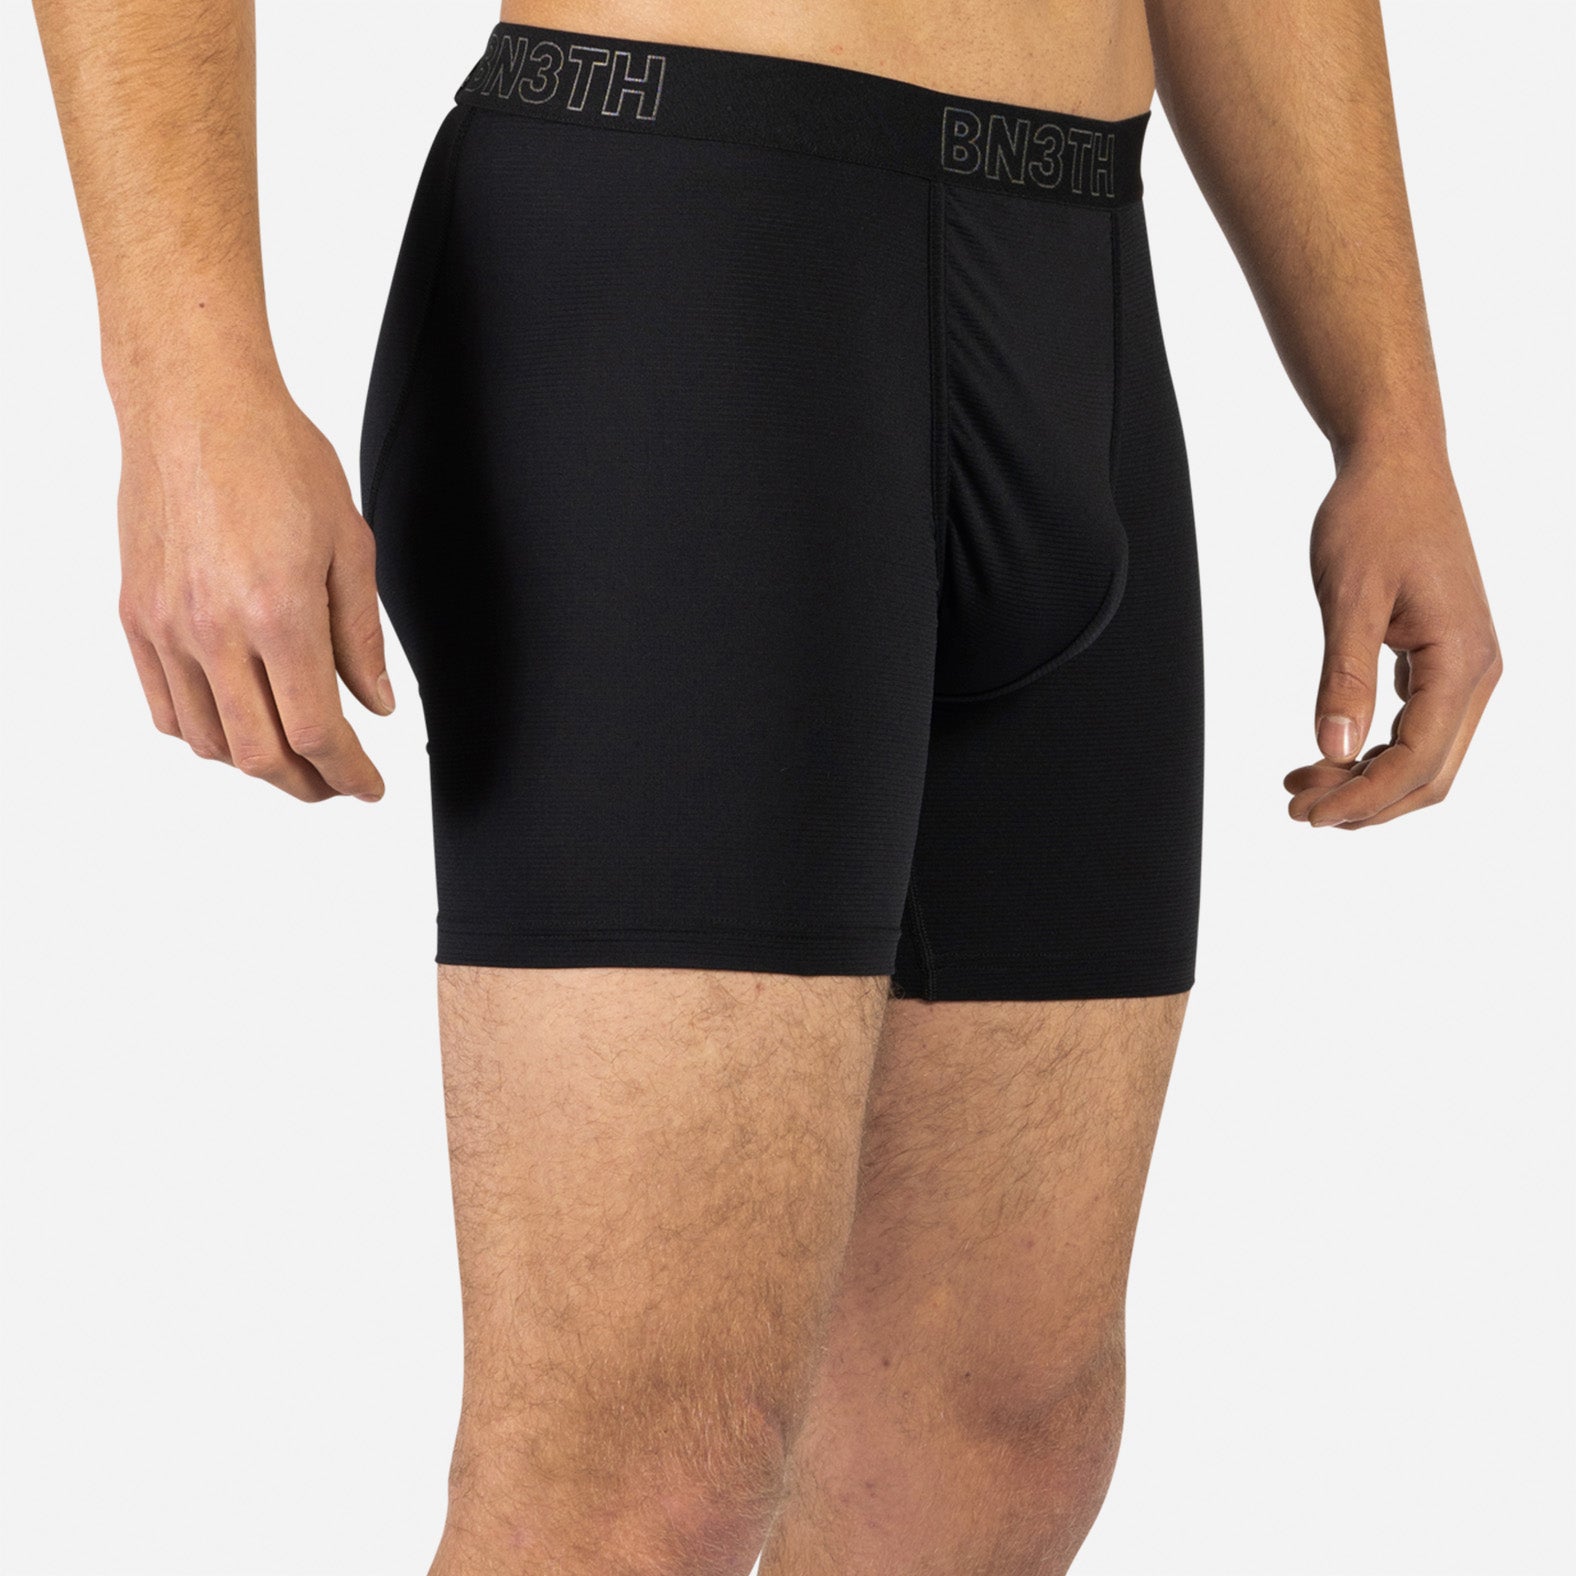 TOP PRO Underwear Briefs - Men's Cotton Stretch Underwear Briefs